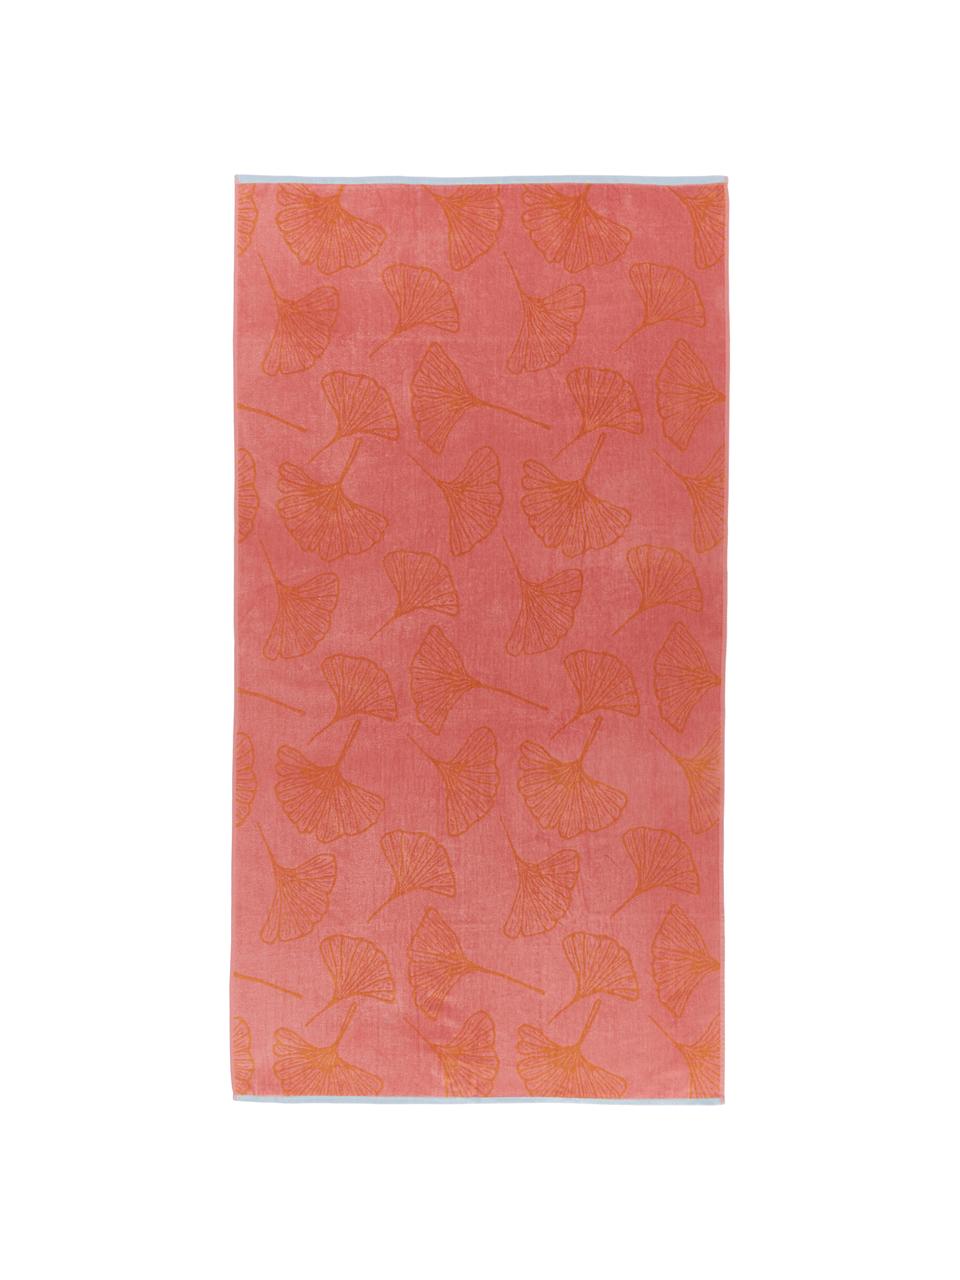 Telo mare con motivo ginkgo Burnt Sky, 100% cotone, Rosa, arancione, Larg. 100 x Lung. 180 cm